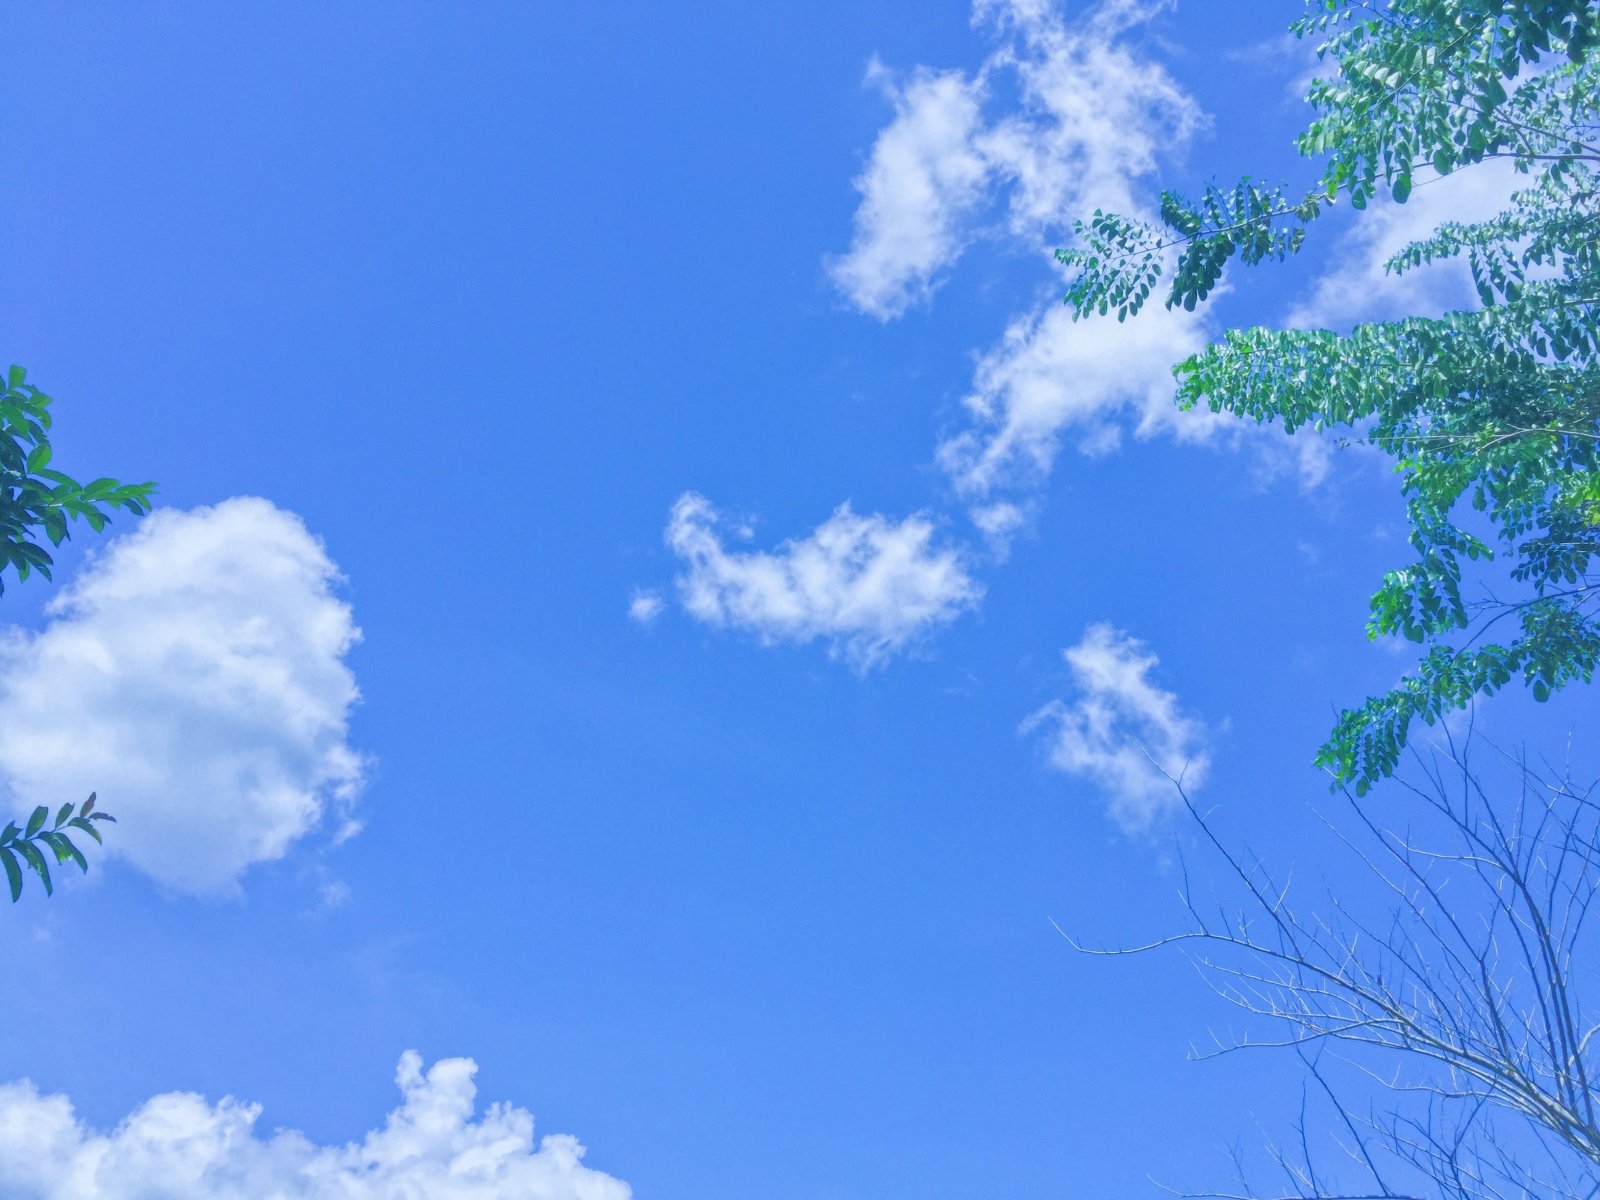 Áng mây, bay: Đôi khi một áng mây bay lả tả giữa bầu trời đủ để đem lại cho chúng ta niềm vui trong cuộc sống. Cảm nhận cảm giác bay bên mây cao dưới với những hình ảnh đầy cảm hứng. Hãy tìm hiểu và chiêm ngưỡng những điều kì diệu đang chờ đón bạn.